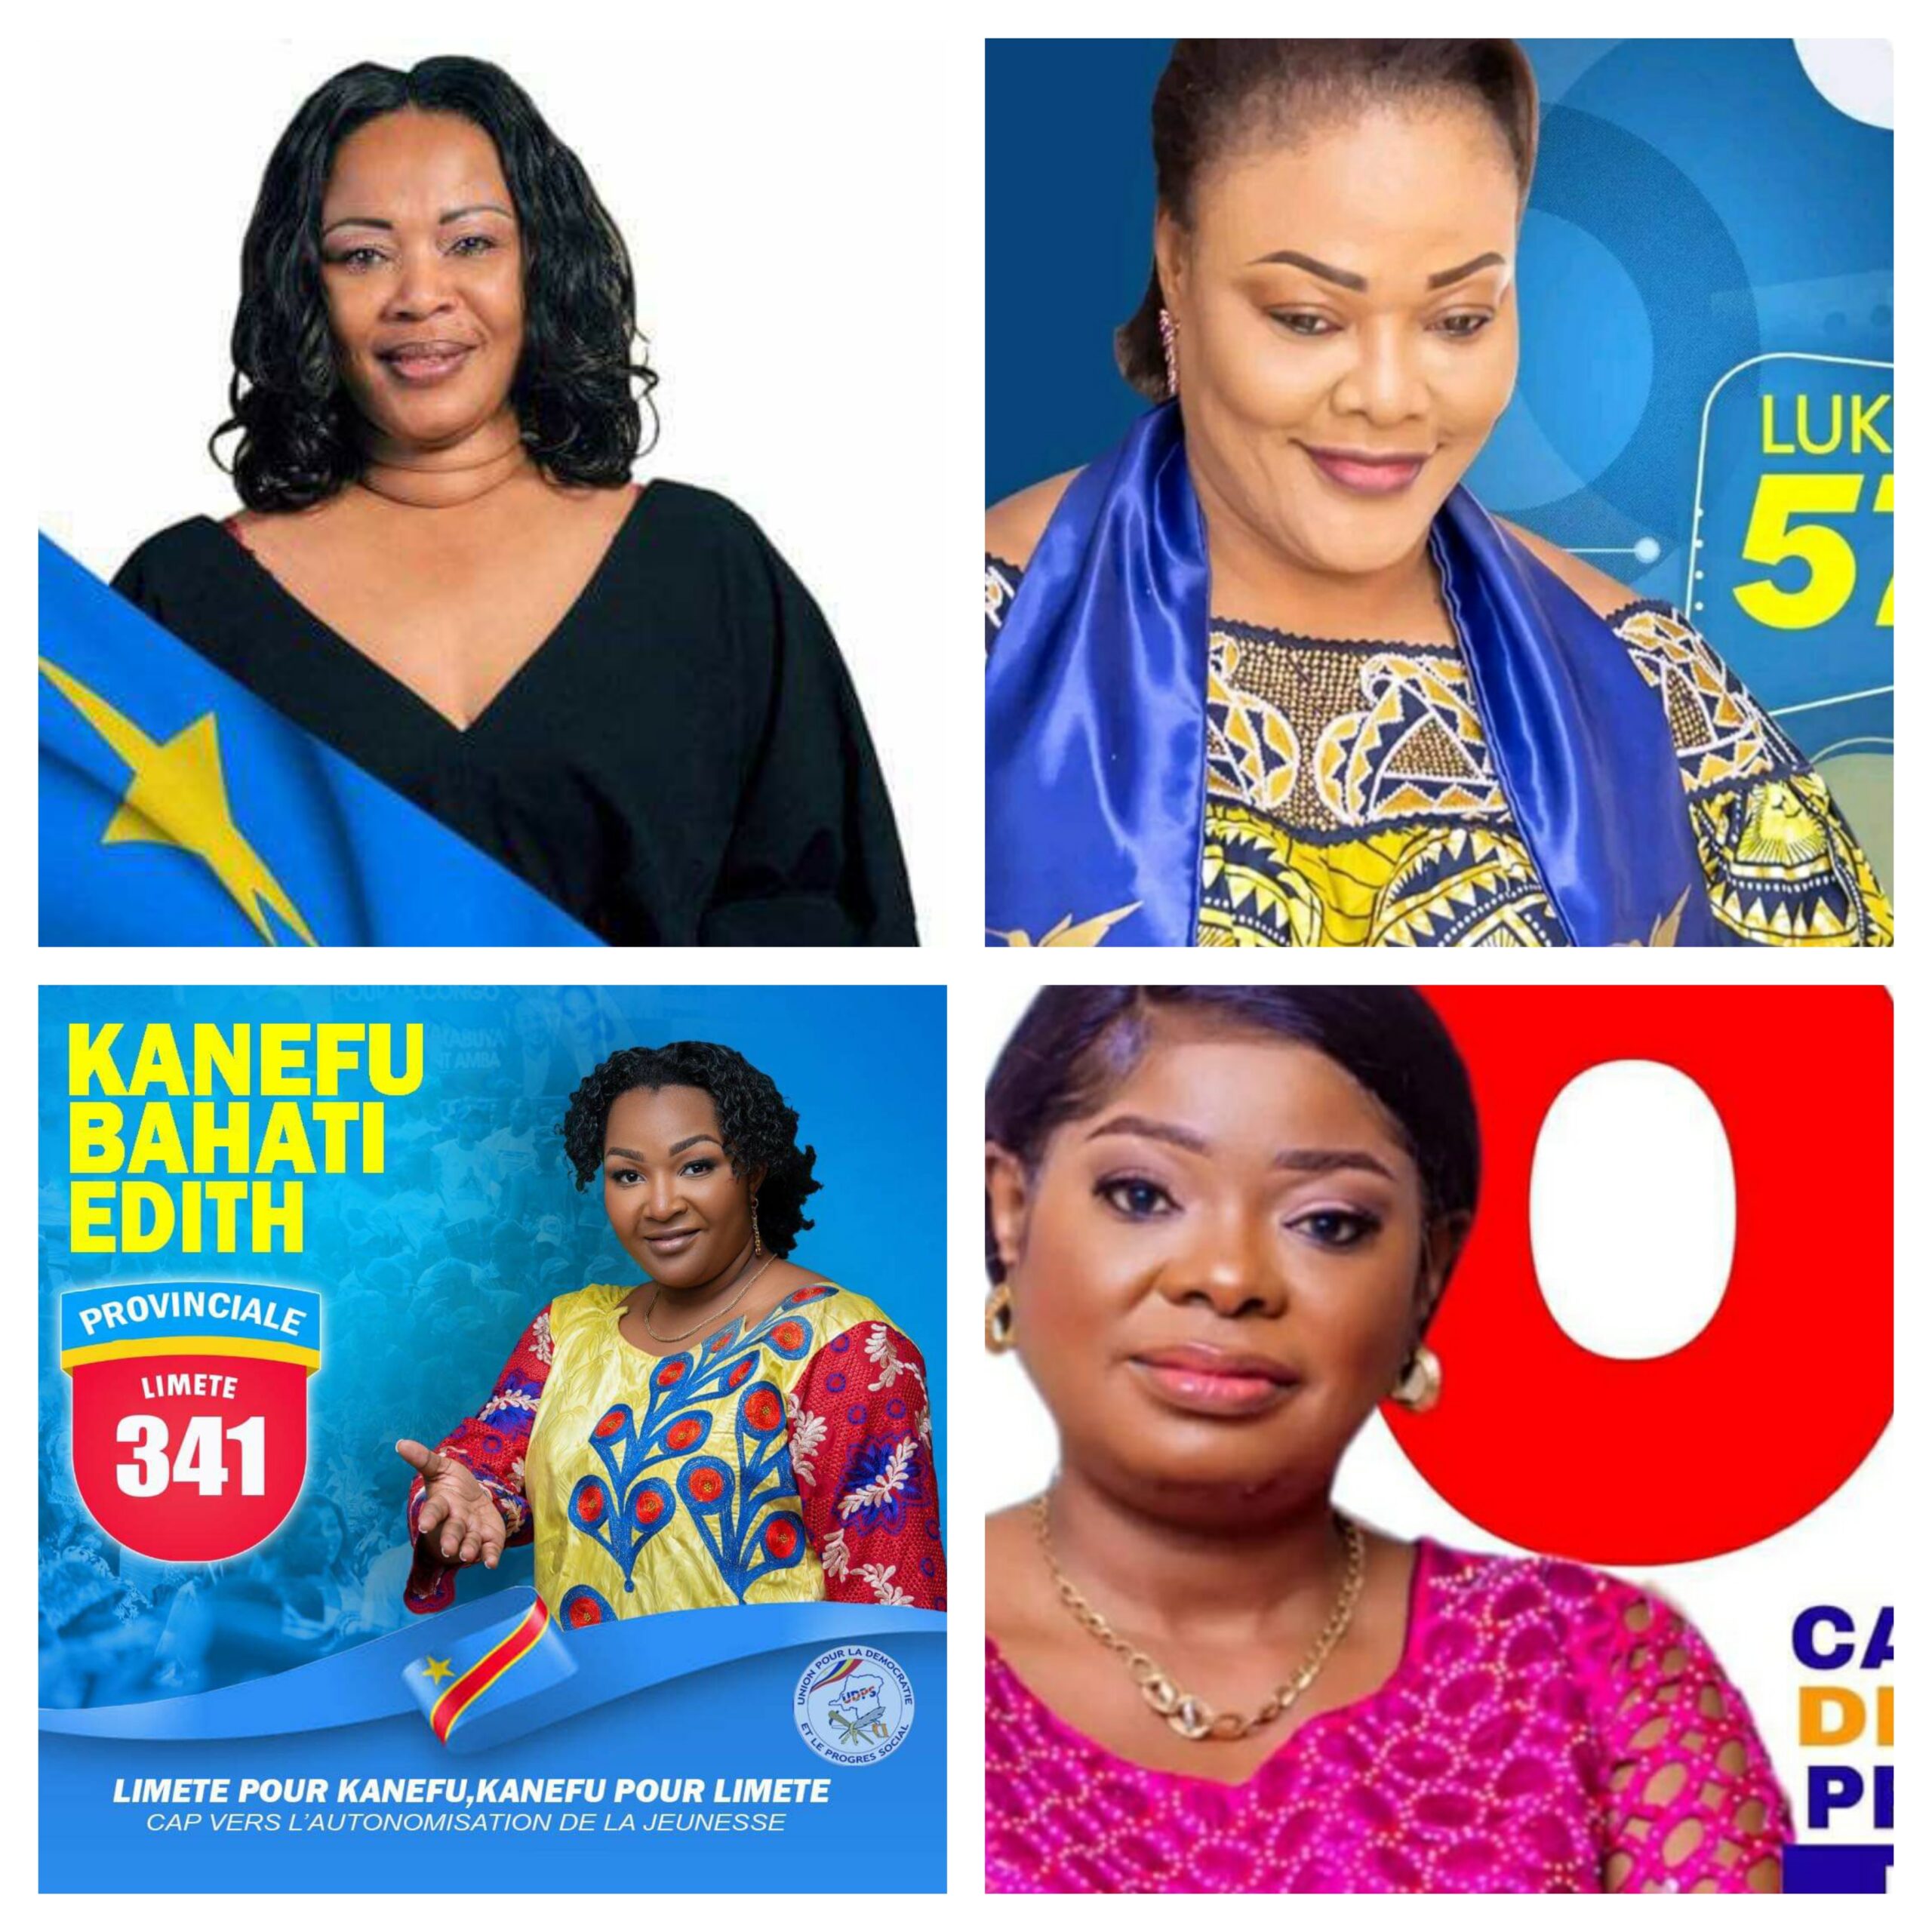 Pepitho Kilala, Germaine Tshinyama, Edith Kanefu et Norbertine Matanda, 4 femmes élues députées à l’assemblée provinciale de Kinshasa contre 40 hommes